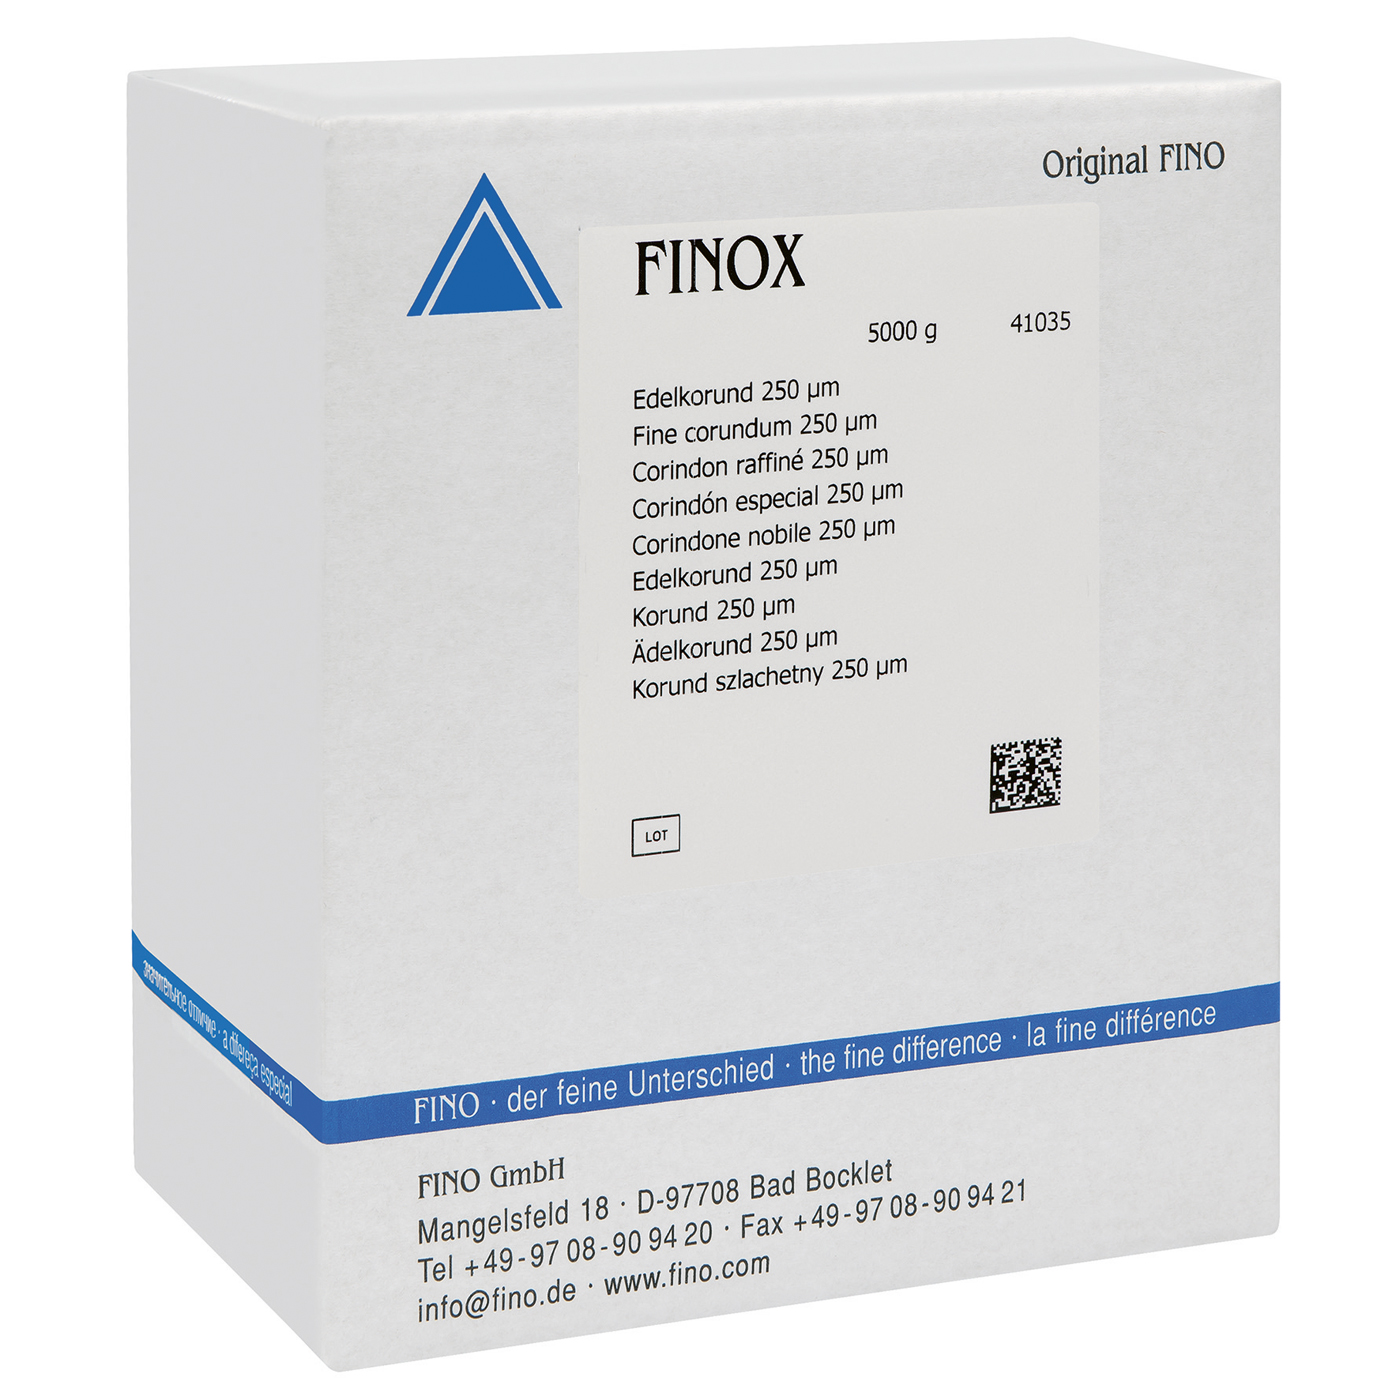 FINOX Edelkorund, 250 µm - 5000 g